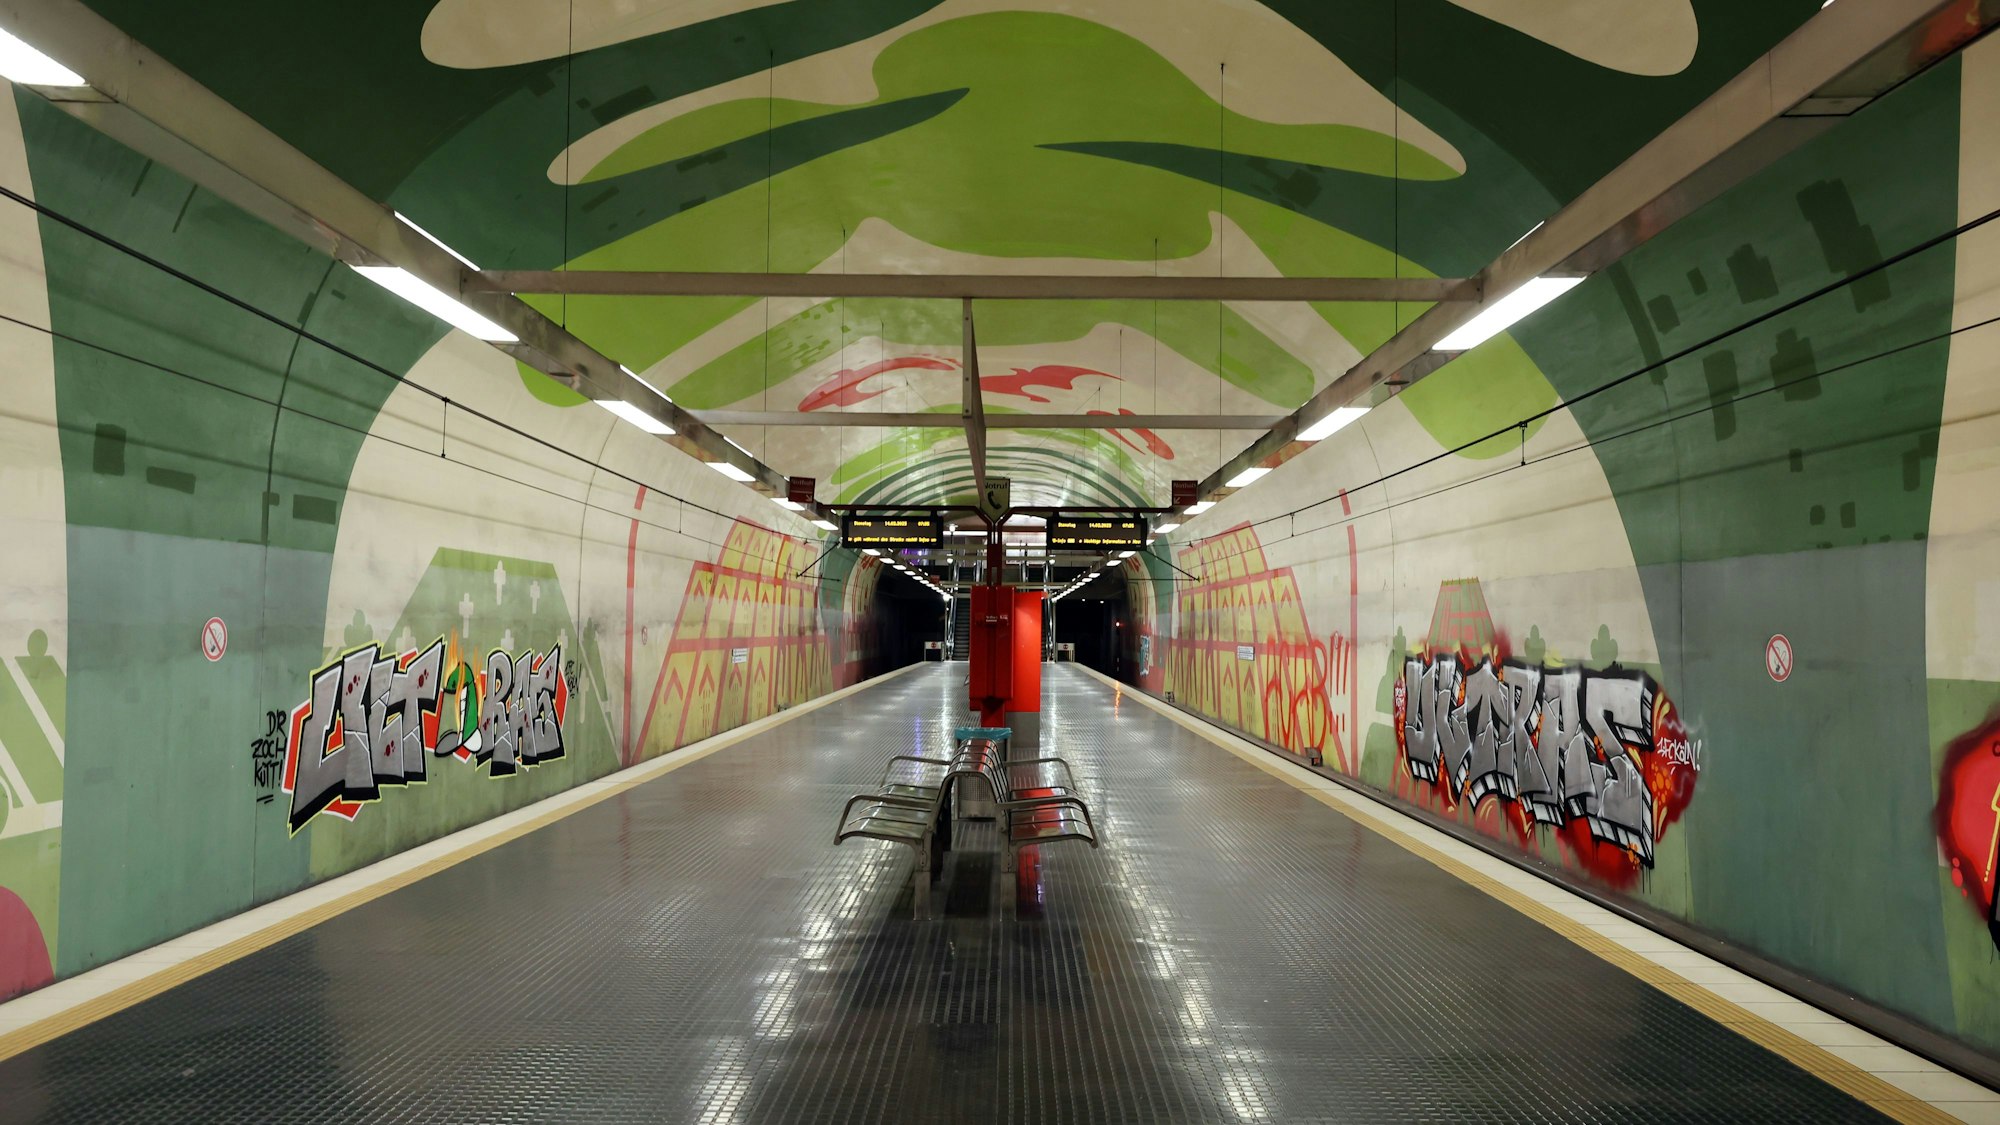 U-Bahn Haltestelle Leyendecker Straße
ohne Menschen.